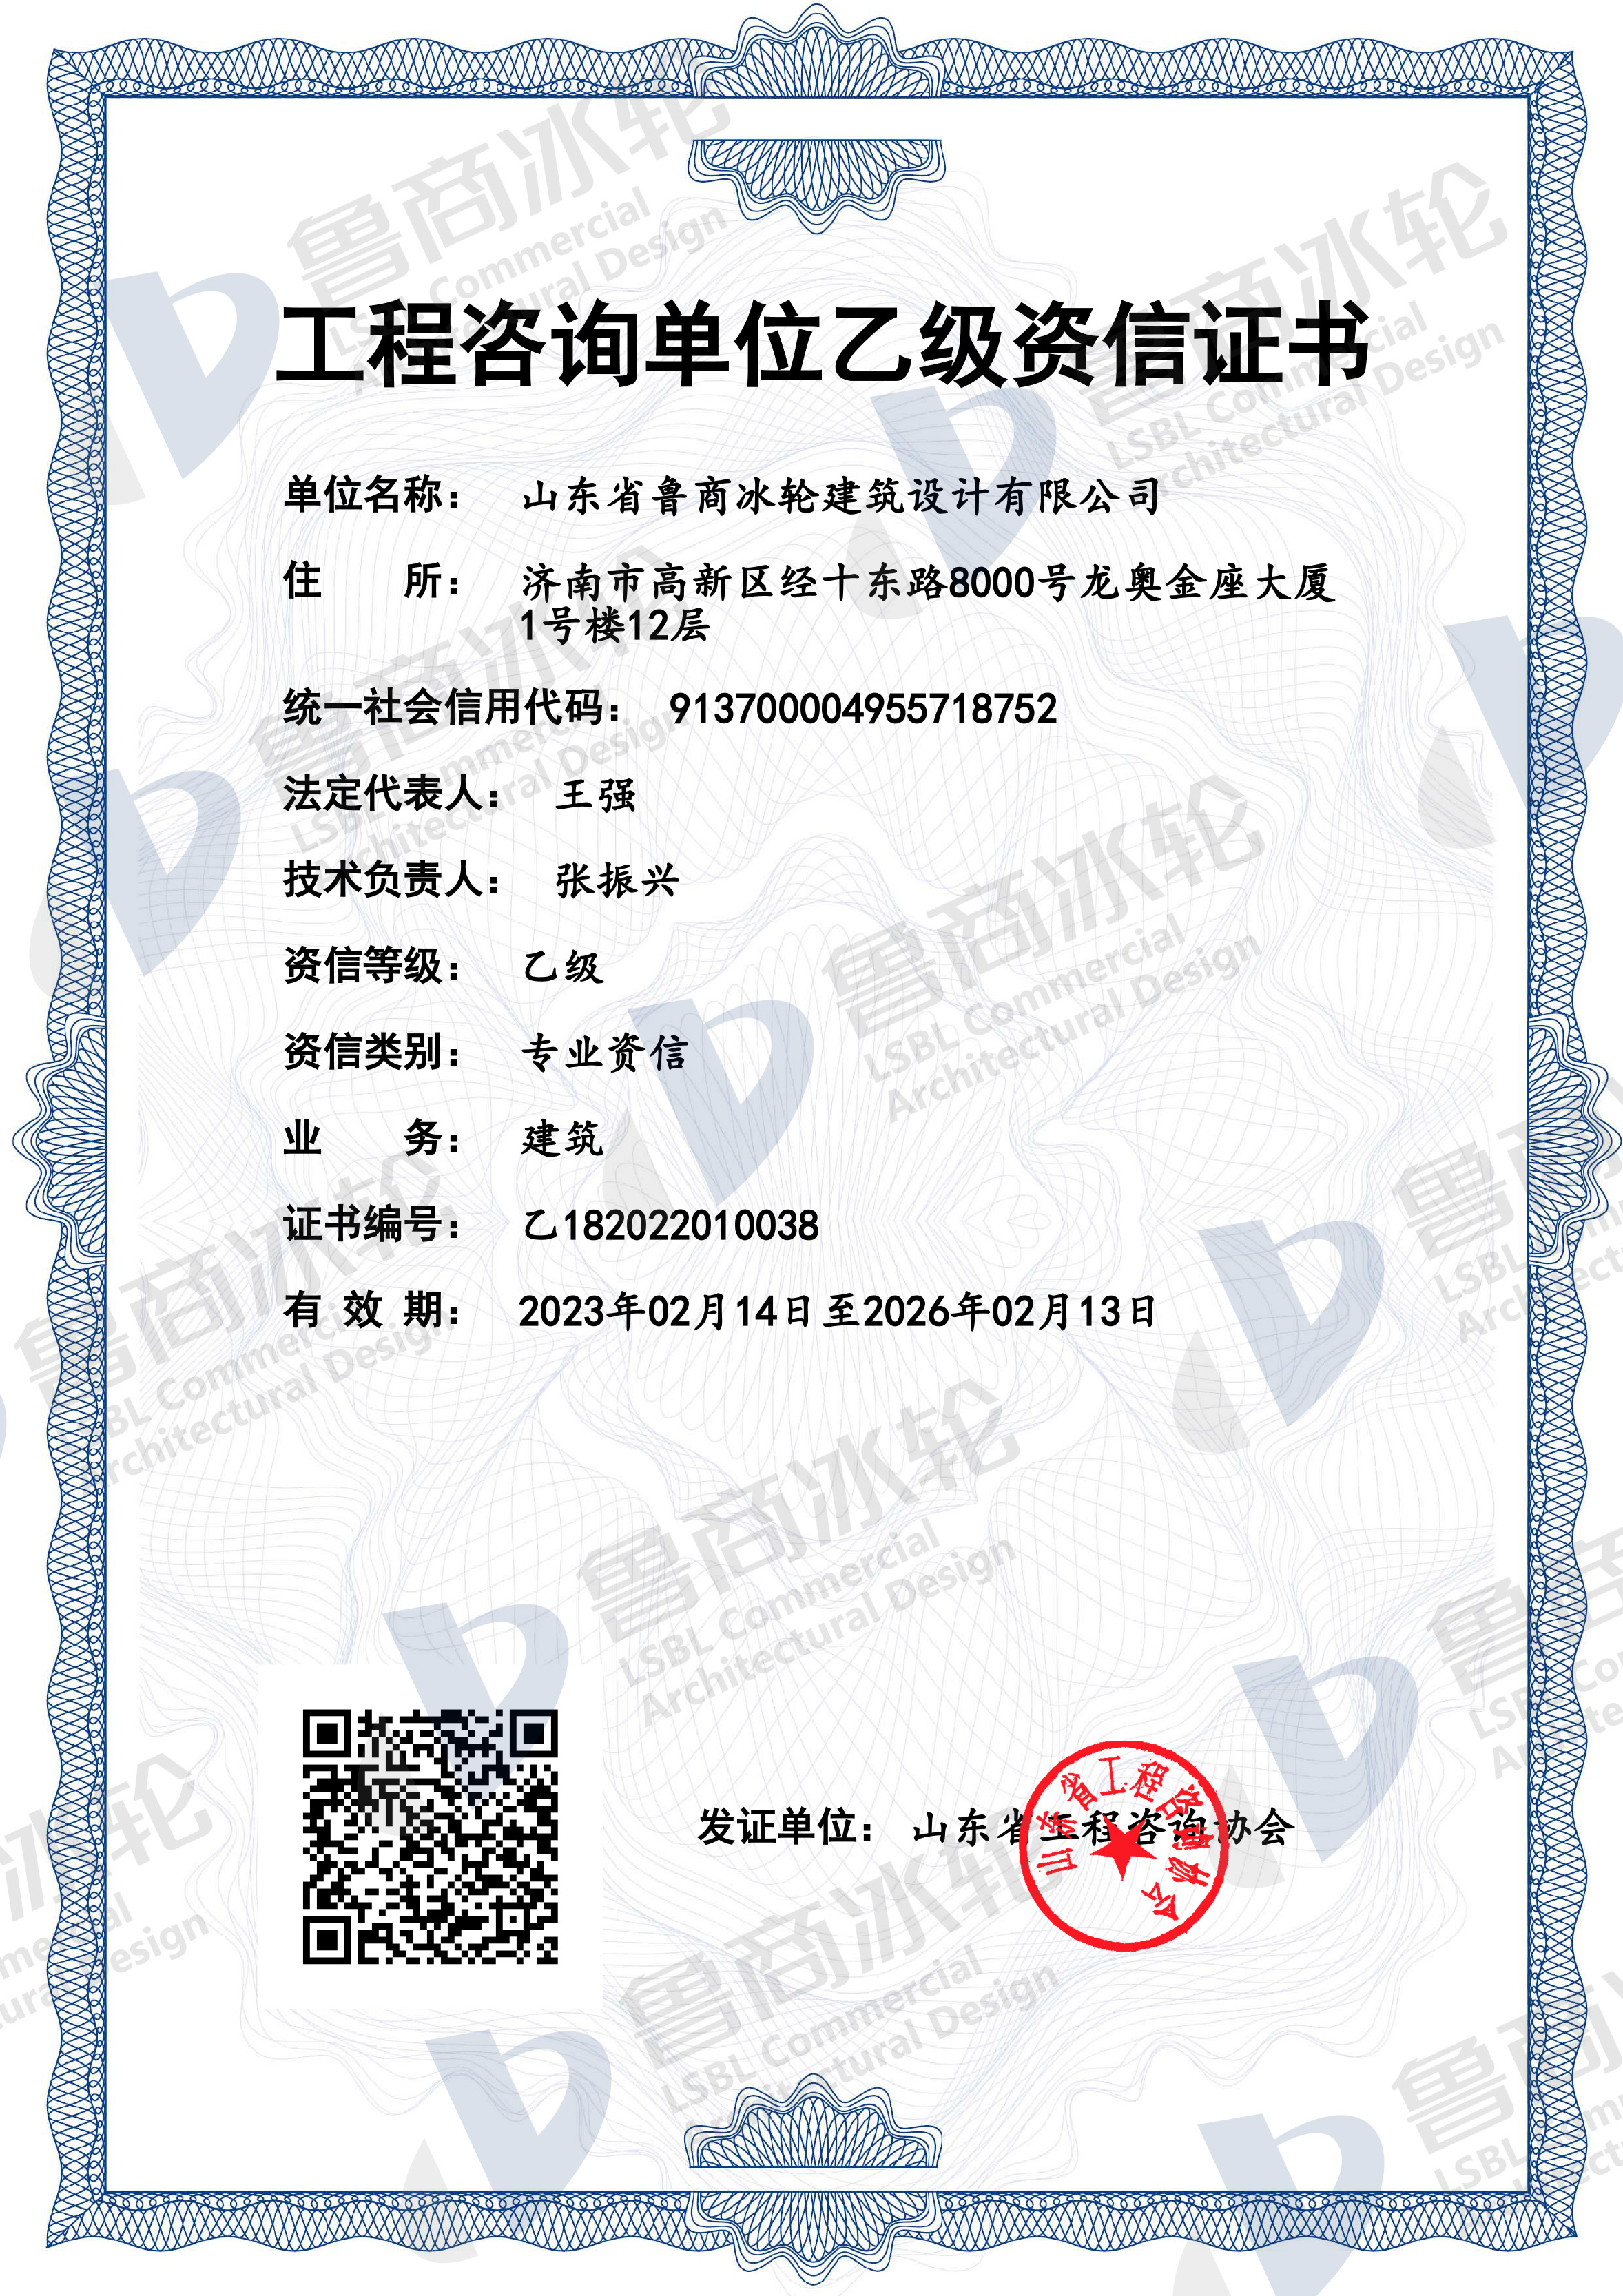 热烈祝贺 新葡的京集团350vip8888取得“工程咨询单位乙级资信证书”